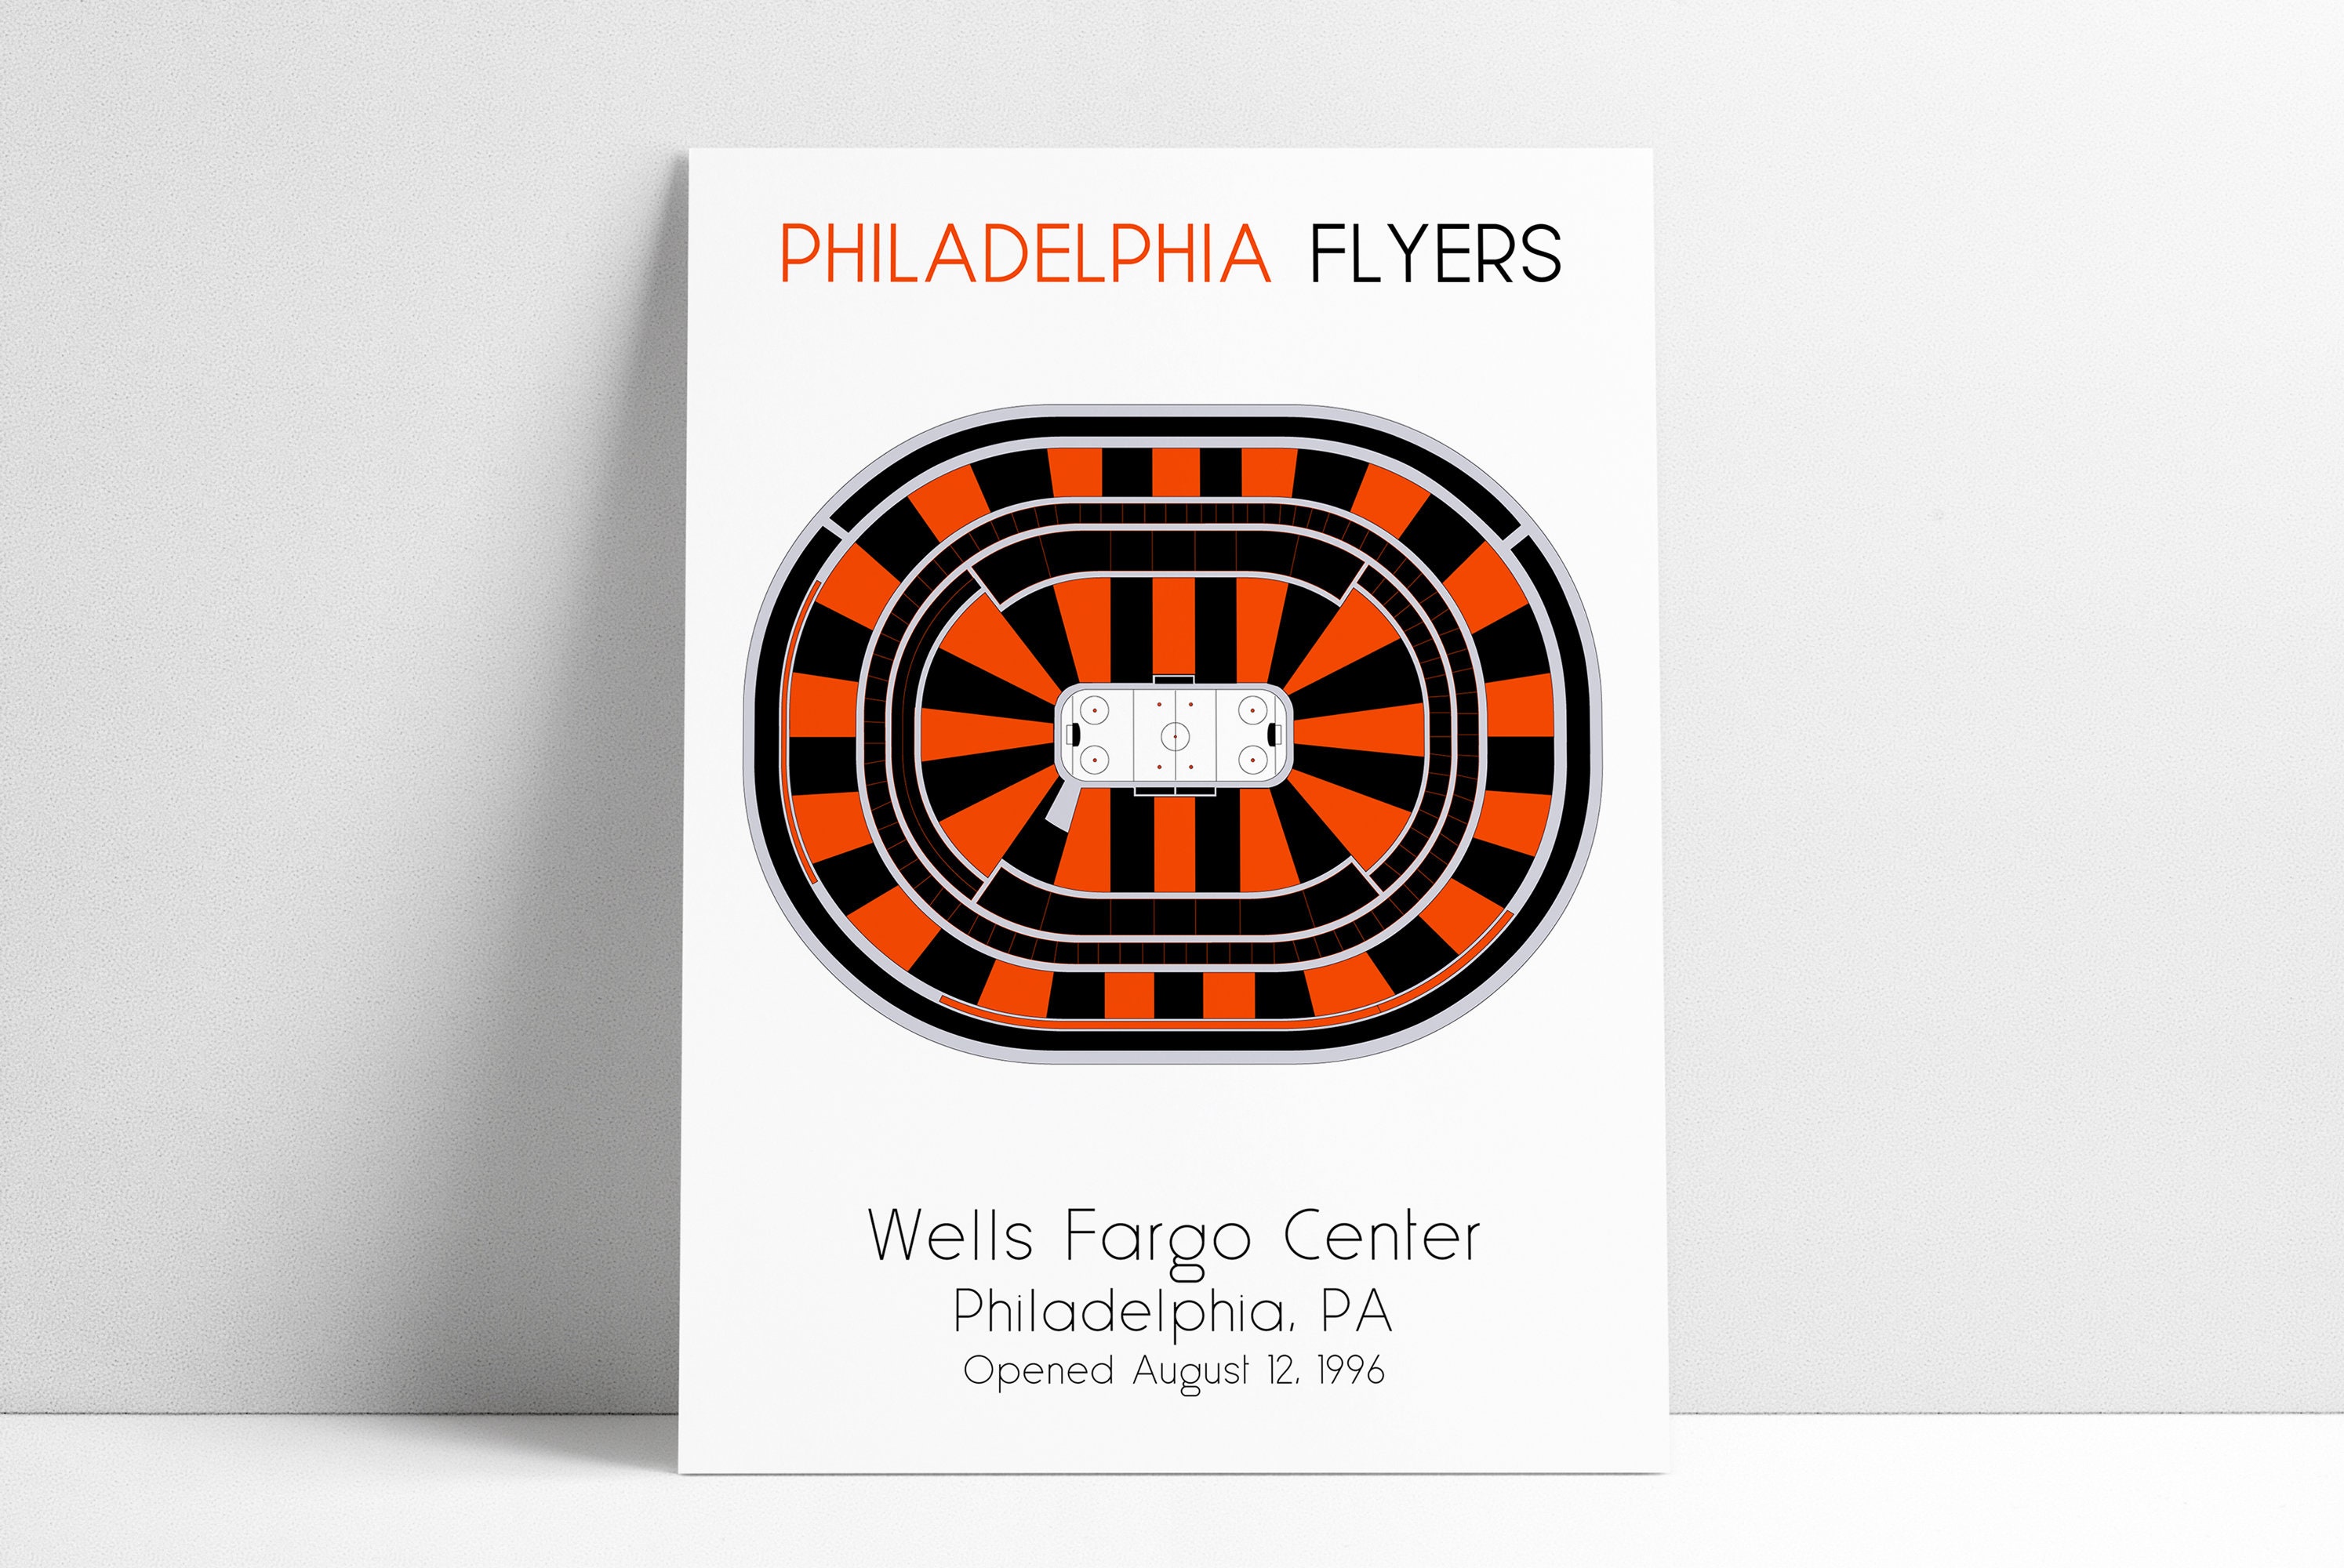 Philadelphia Flyers Wells Fargo Center Philadelphia Seating Chart Vint